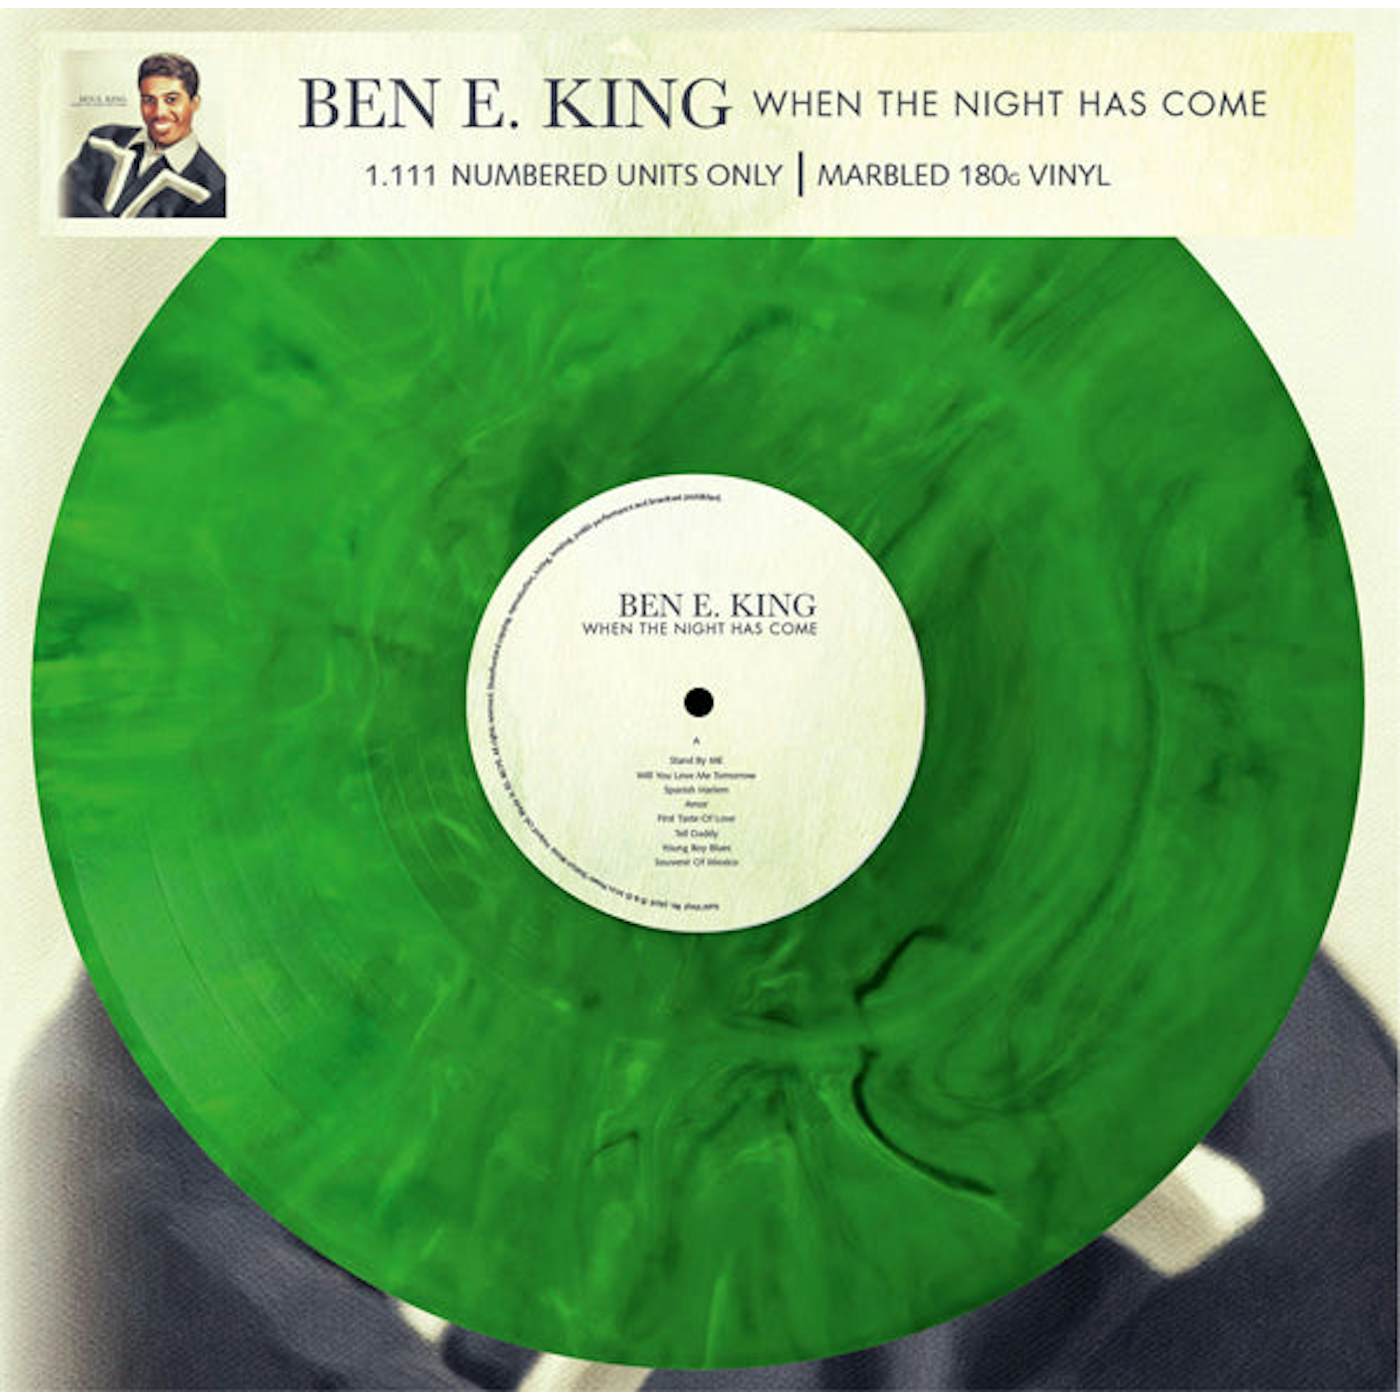 Ben E. King LP - When The Night Has Come (Vinyl)